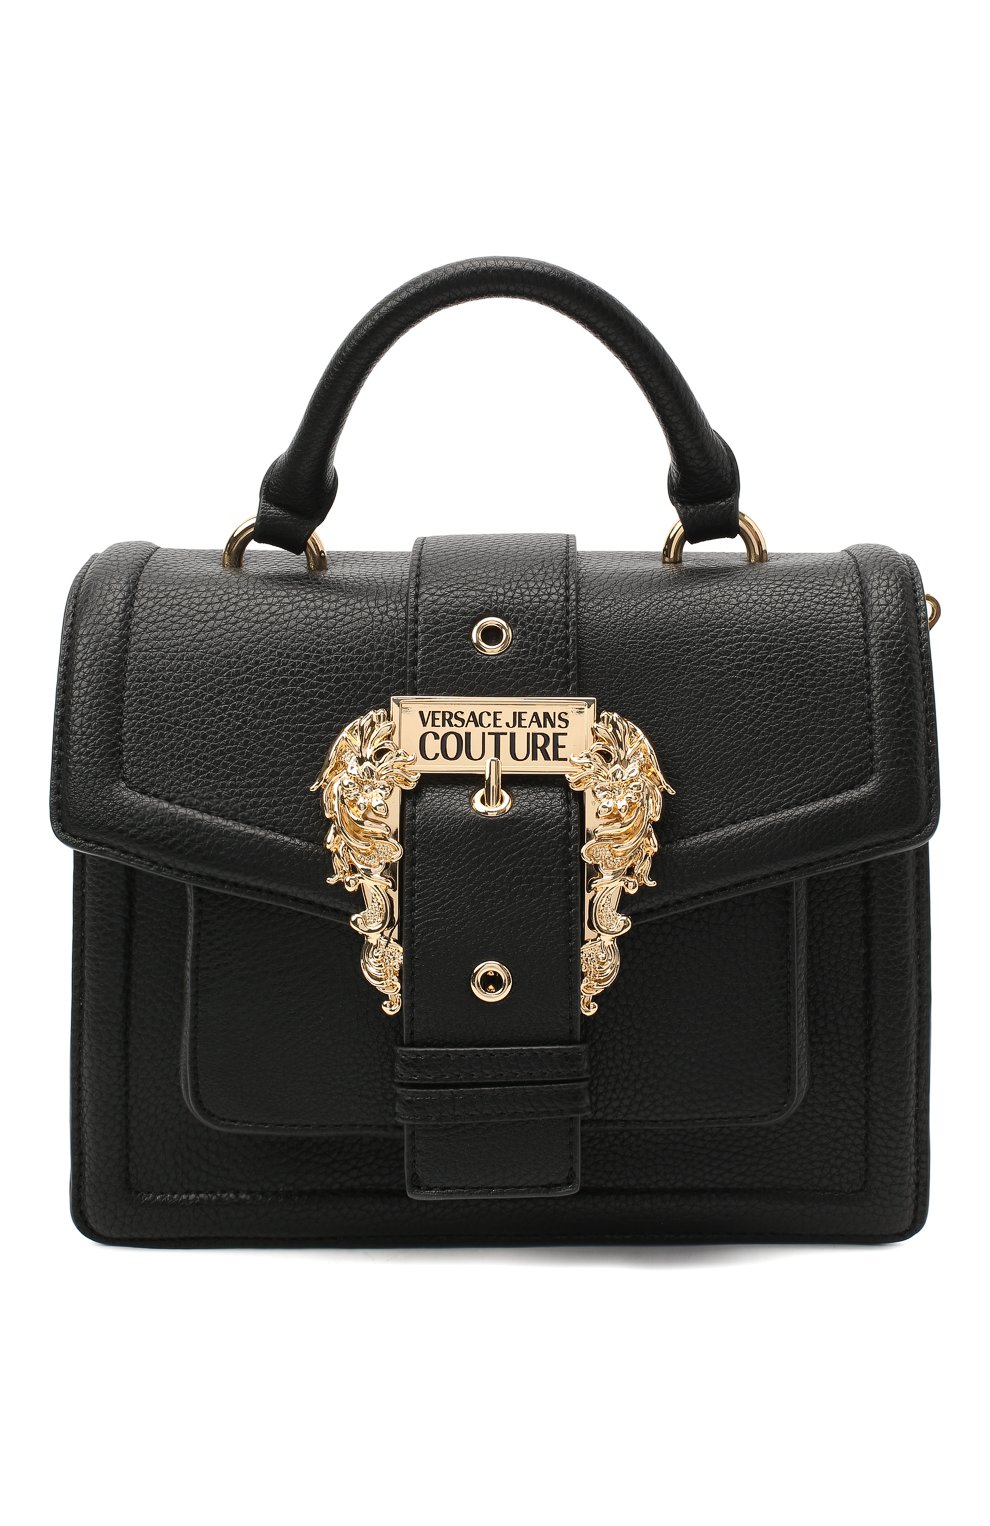 Женская черная сумка VERSACE JEANS COUTURE — купить в интернет-магазине ЦУМ, арт. E1VZABF5-LINEA